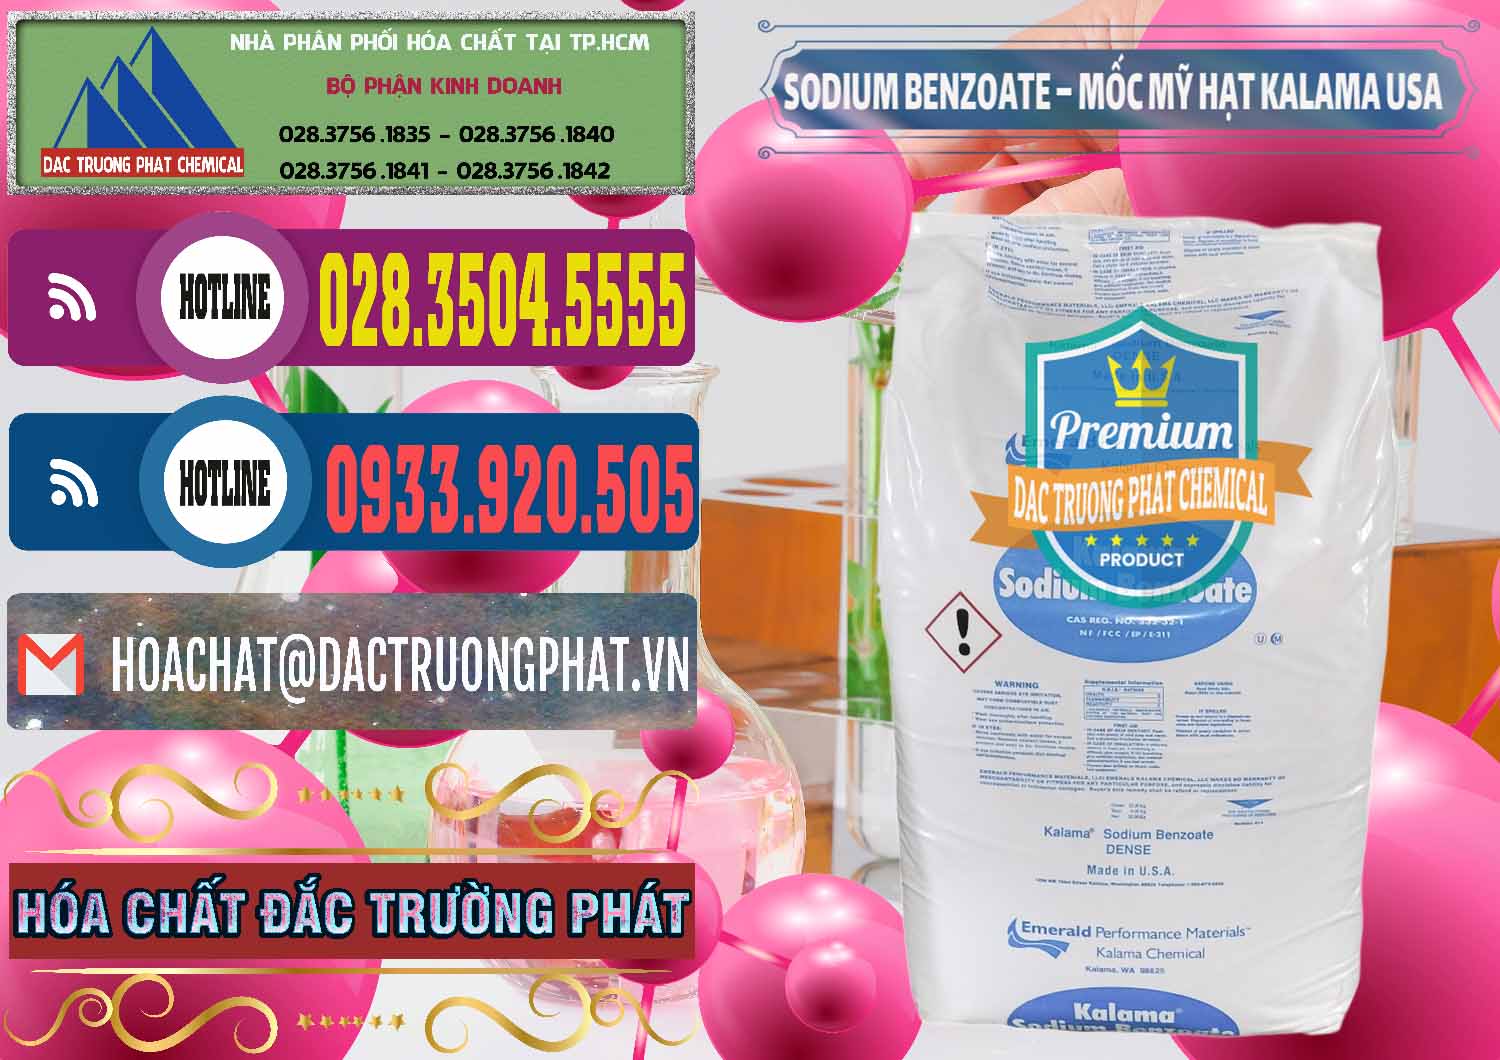 Cung cấp và bán Sodium Benzoate - Mốc Hạt Kalama Food Grade Mỹ Usa - 0137 - Cty phân phối & kinh doanh hóa chất tại TP.HCM - muabanhoachat.com.vn